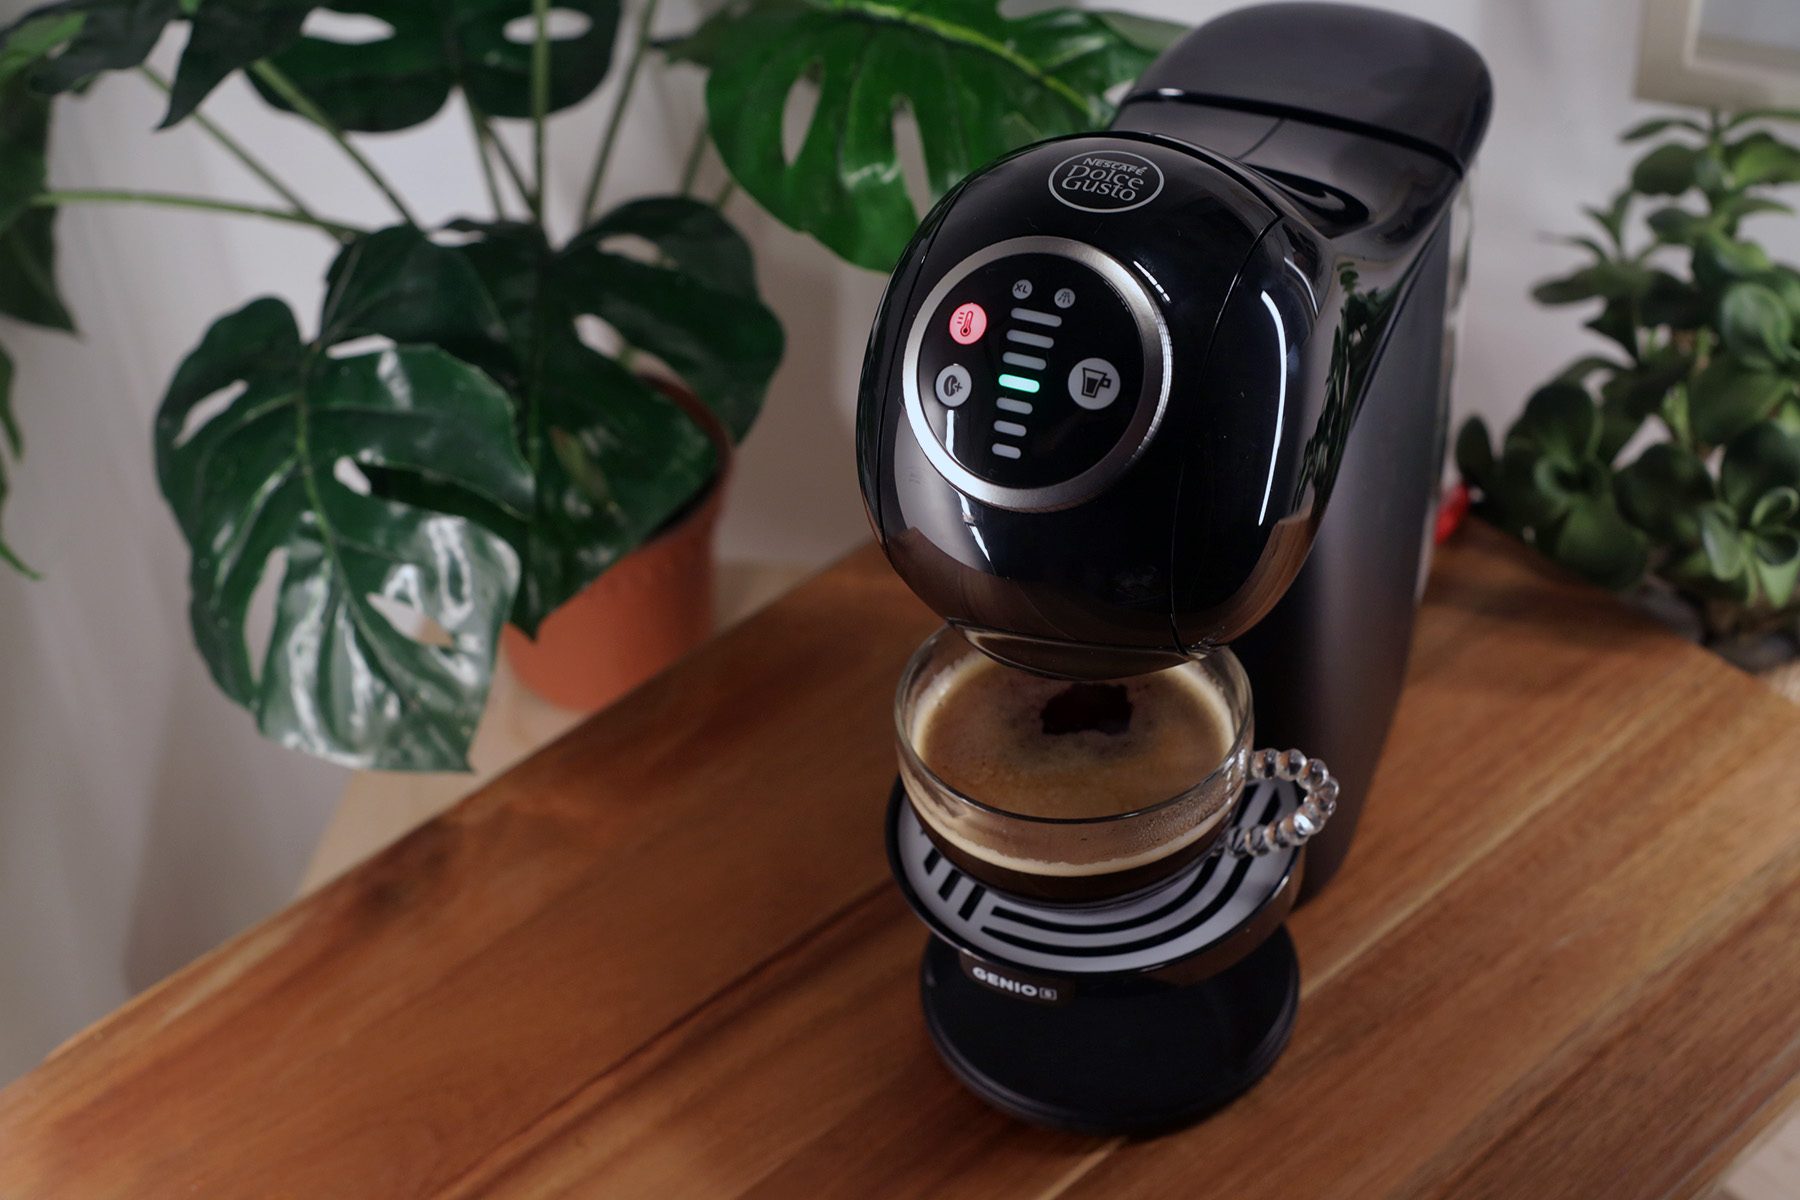 NESCAFE Dolce Gusto GENIO S PLUS Coffee Machine User Manual